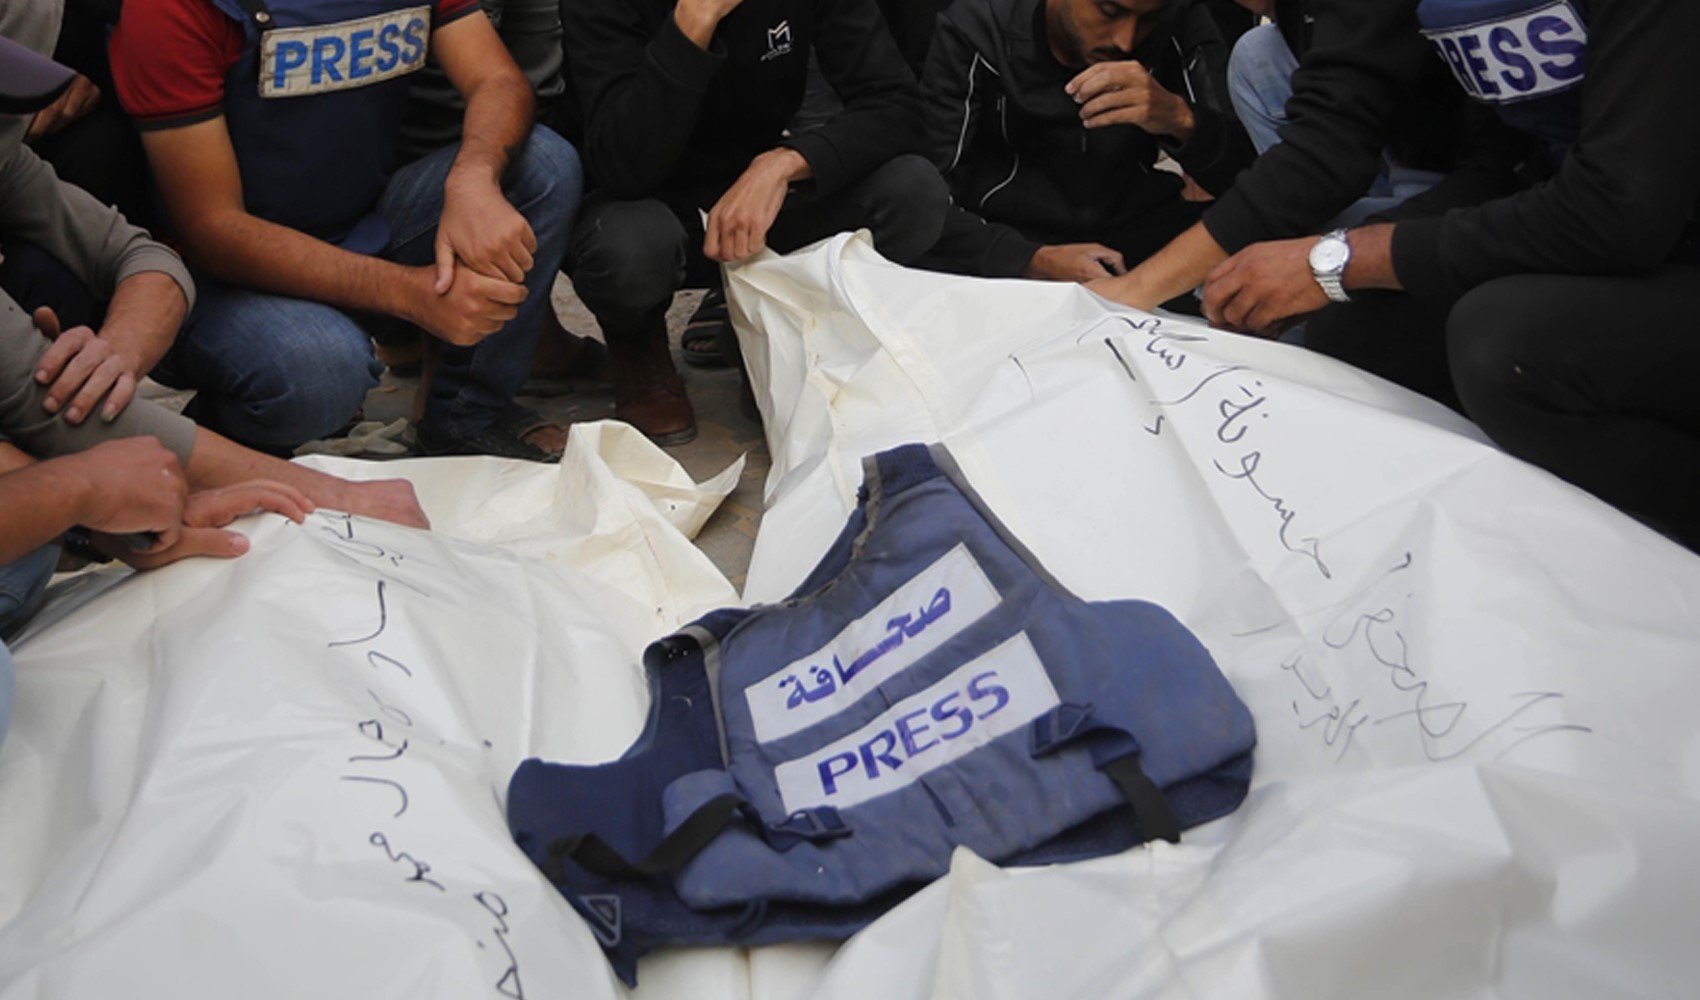 Gazze’de öldürülen gazeteci sayısı 133’e yükseldi